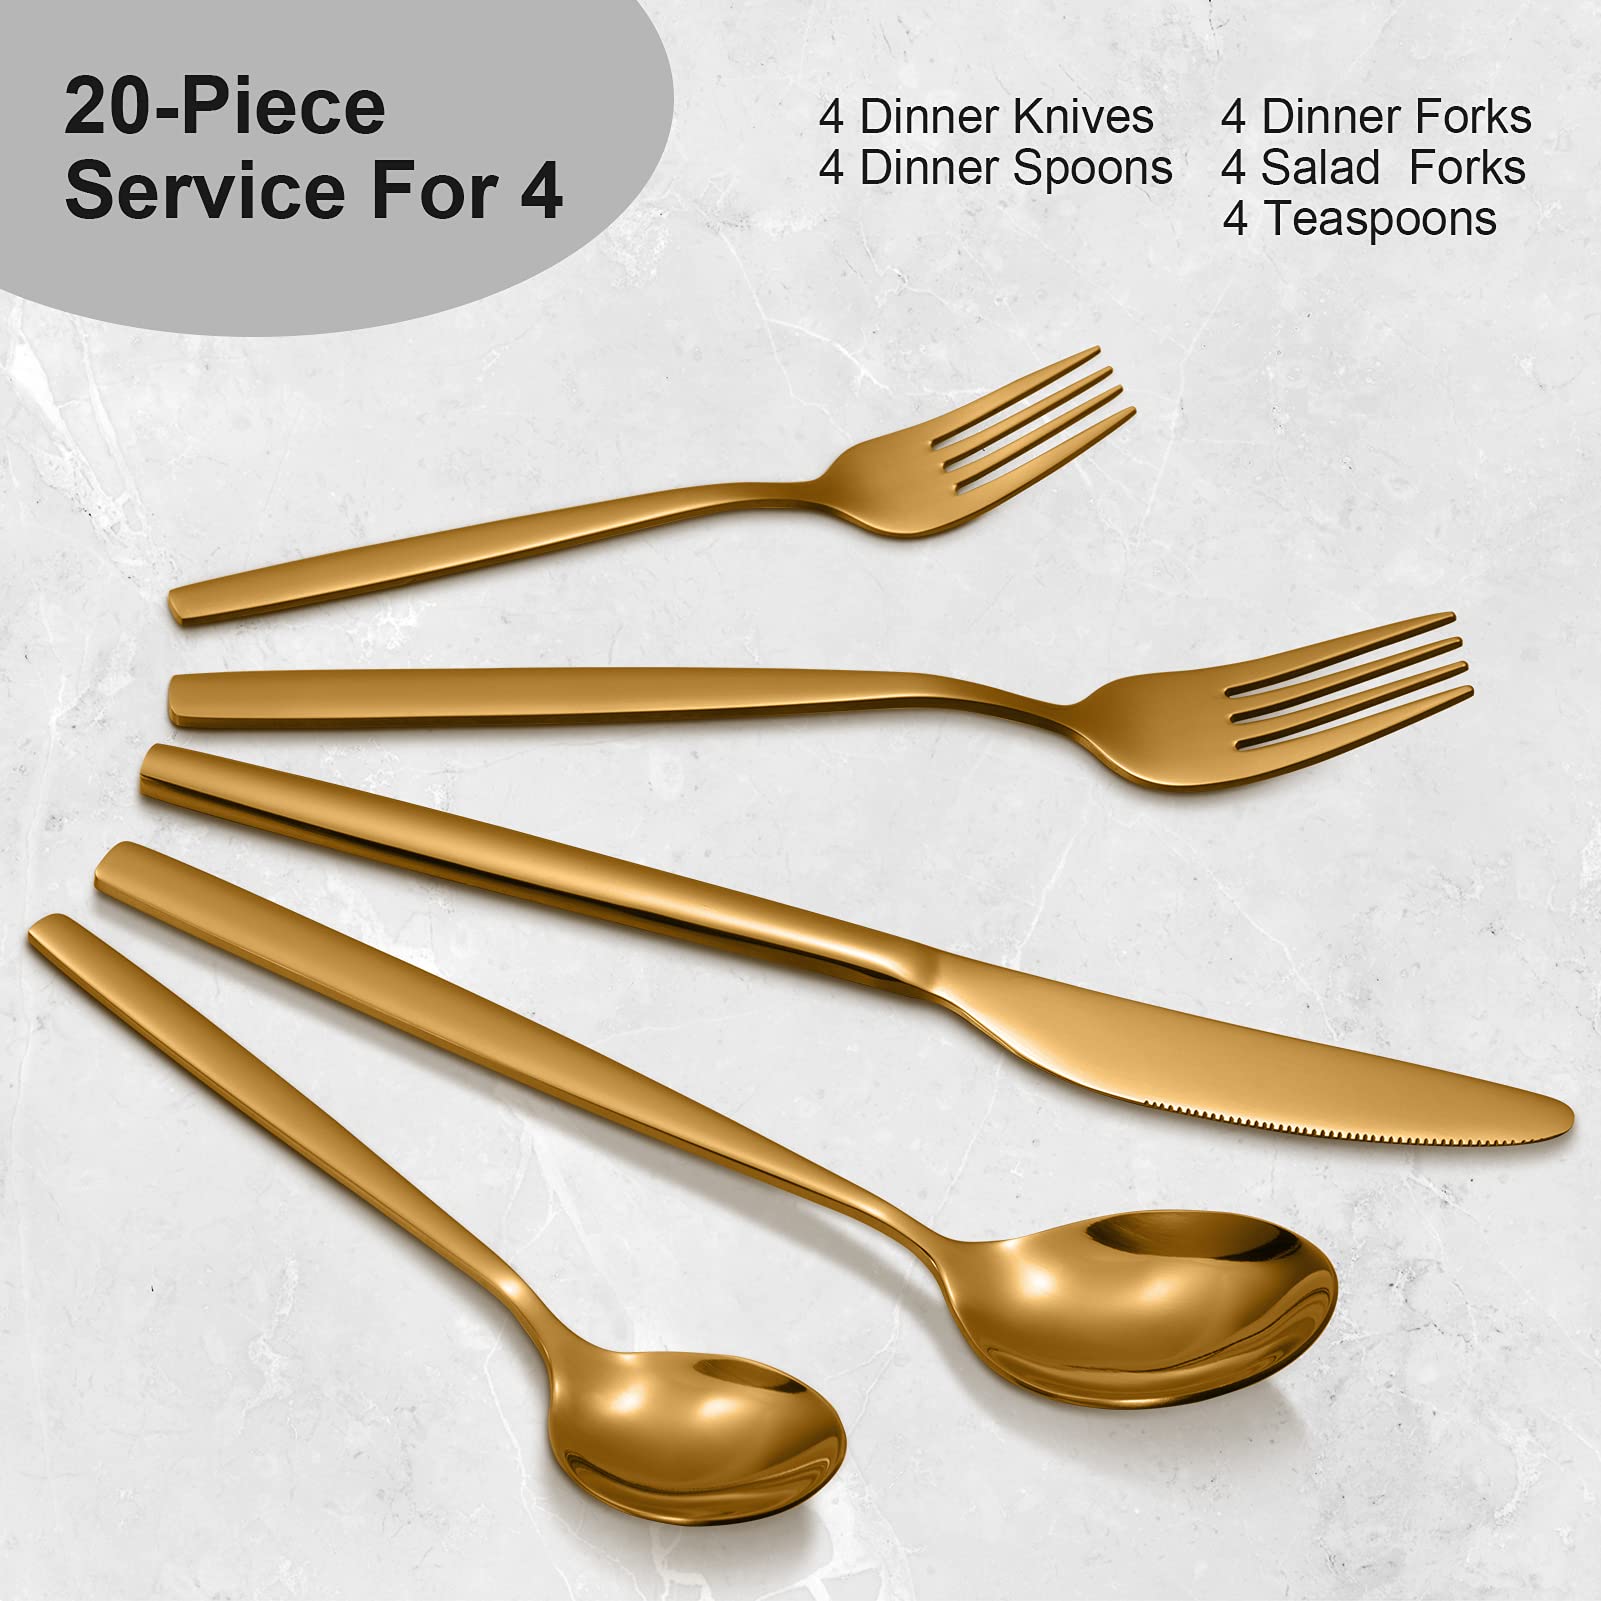 CIBEAT 20 Piece Stainless Steel Kitchen Flatware Set - Gold